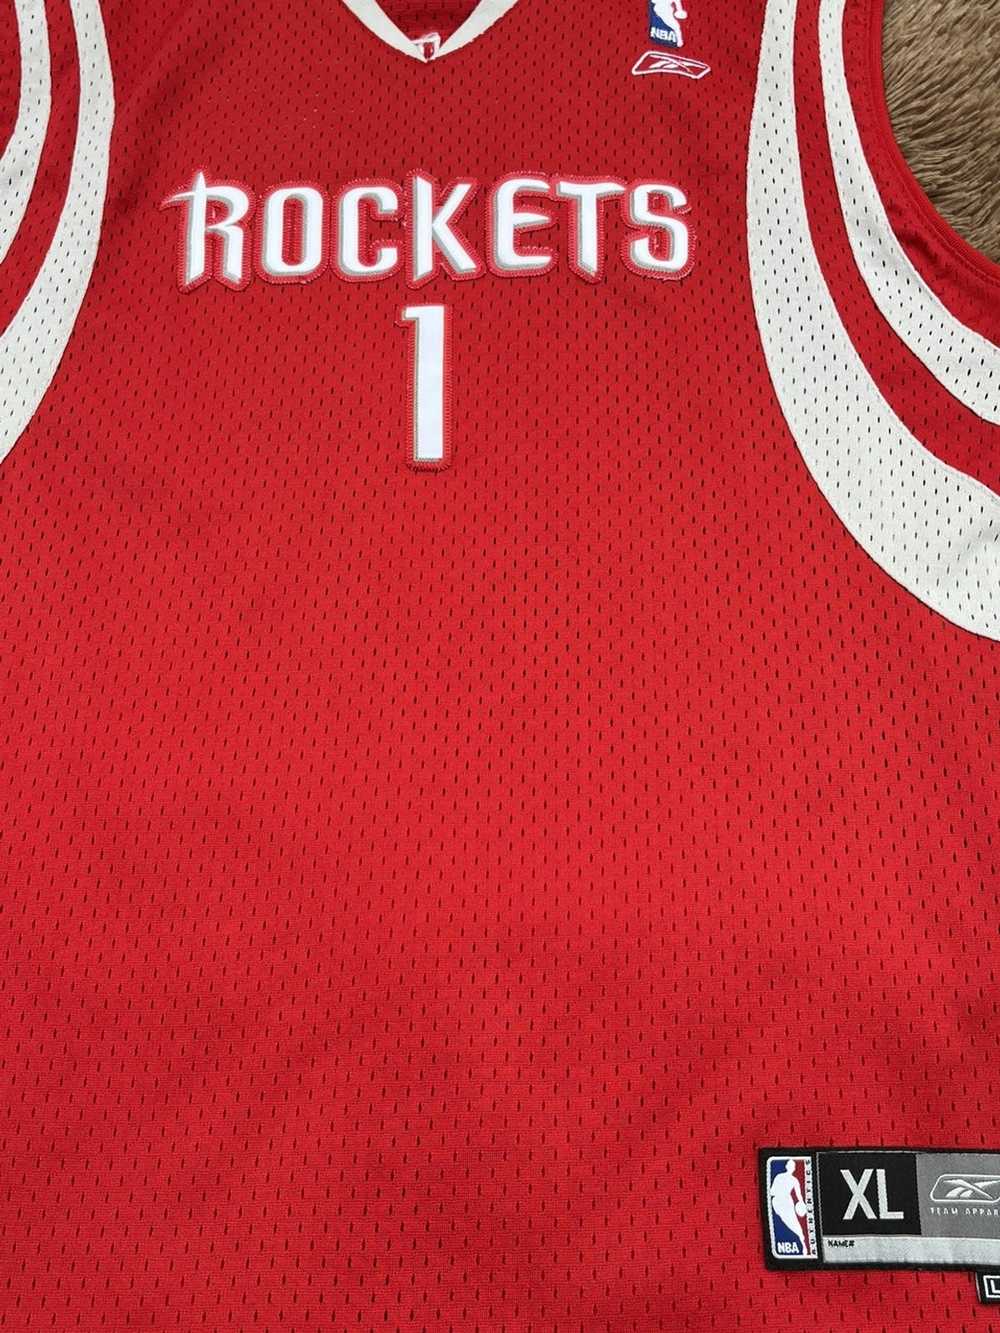 NBA × Reebok Tracy McGrady Stitched reebok jersey - image 2